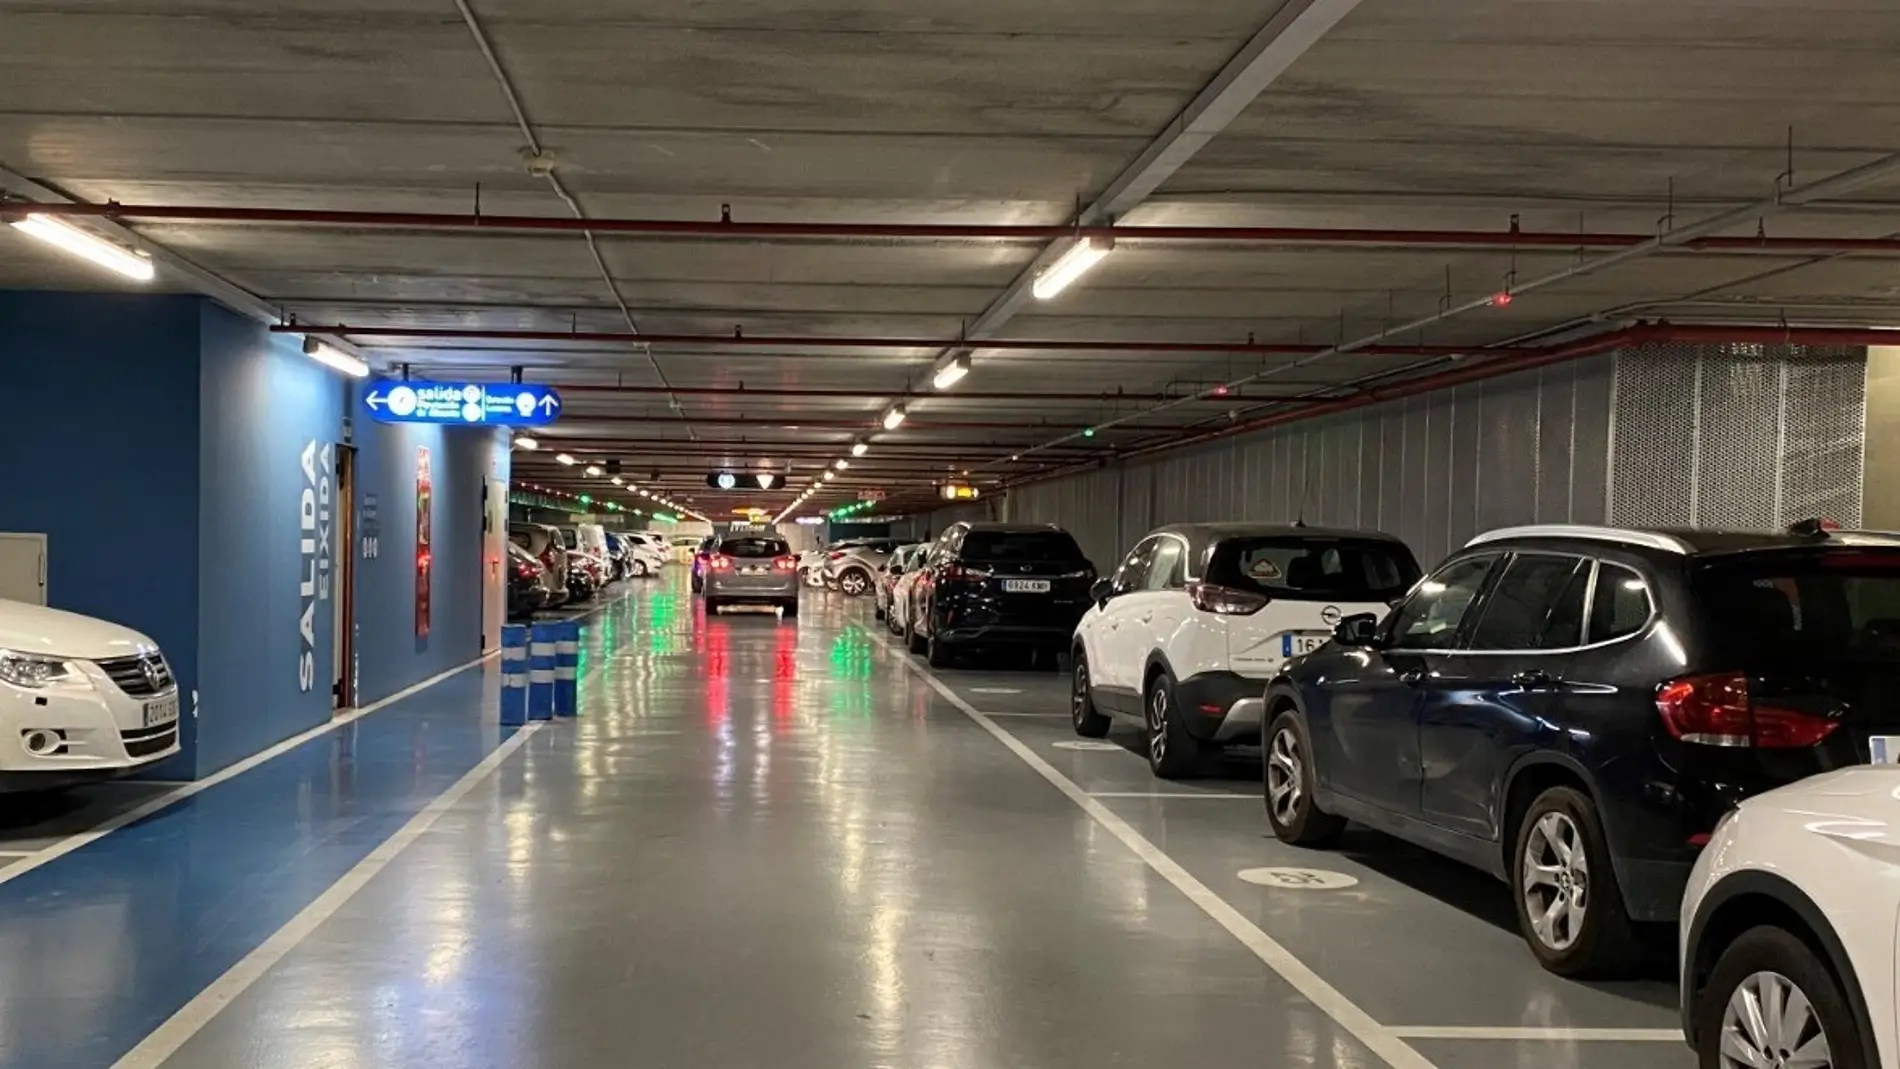 Vectalia instalarán puntos de recarga de la mano de Iberdrola para vehículos eléctricos en el Parking Avenida Estación